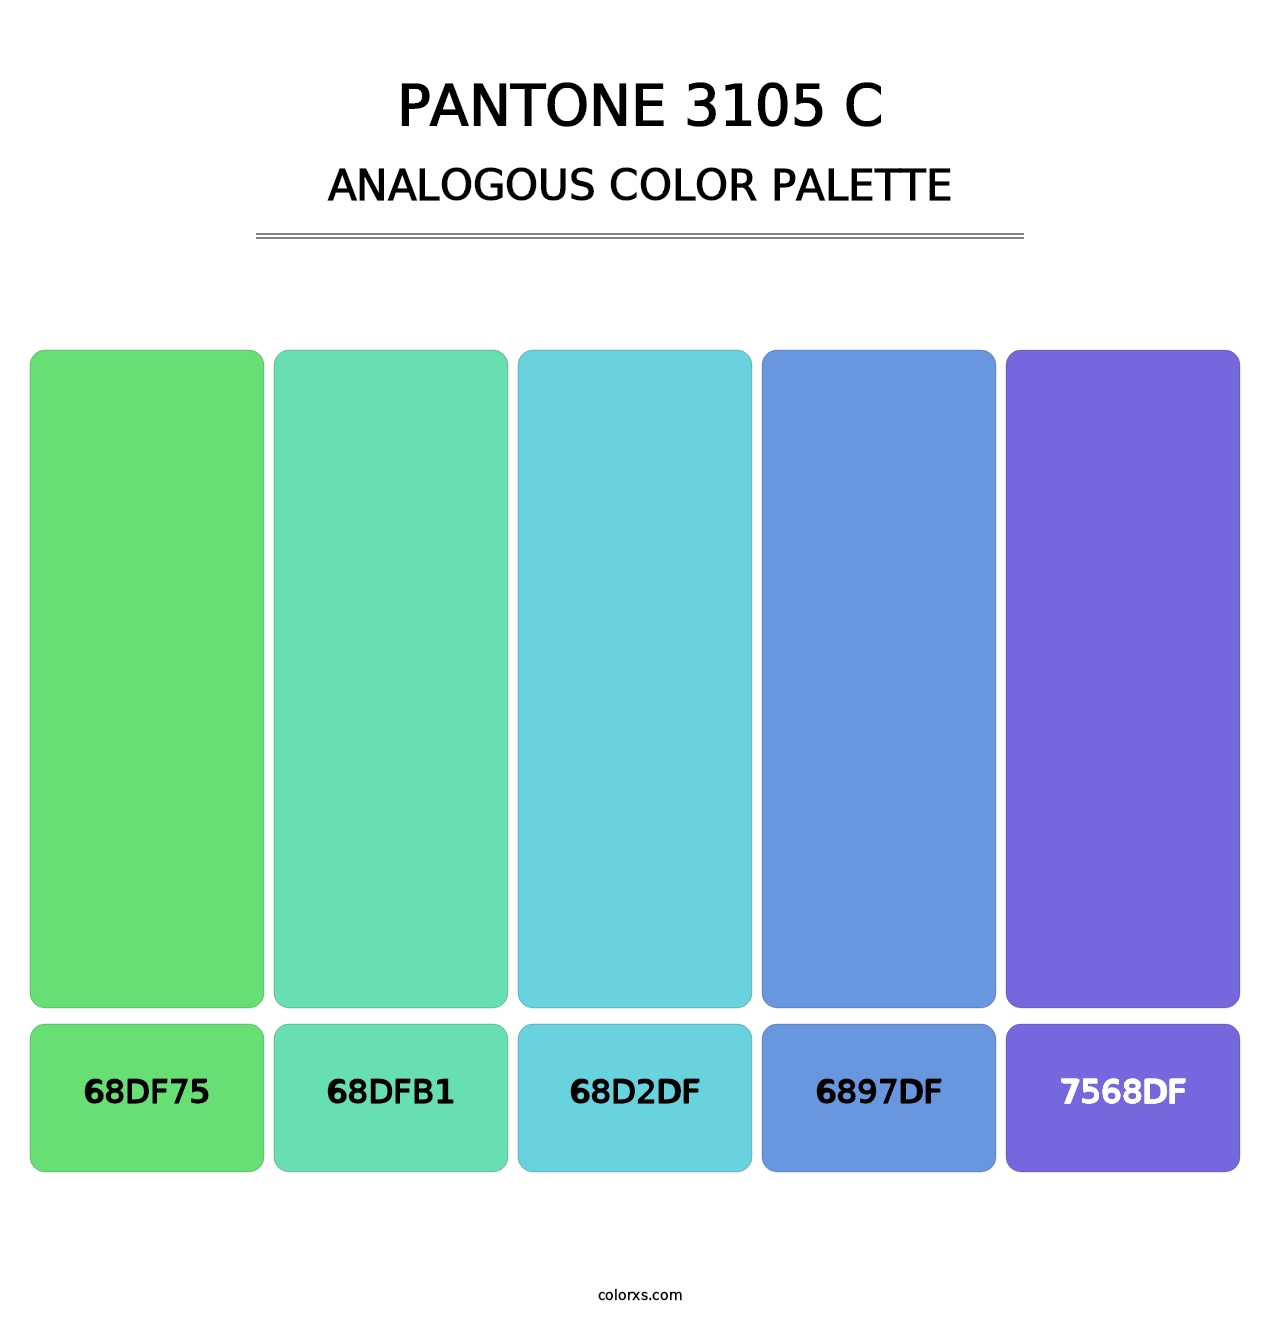 PANTONE 3105 C - Analogous Color Palette